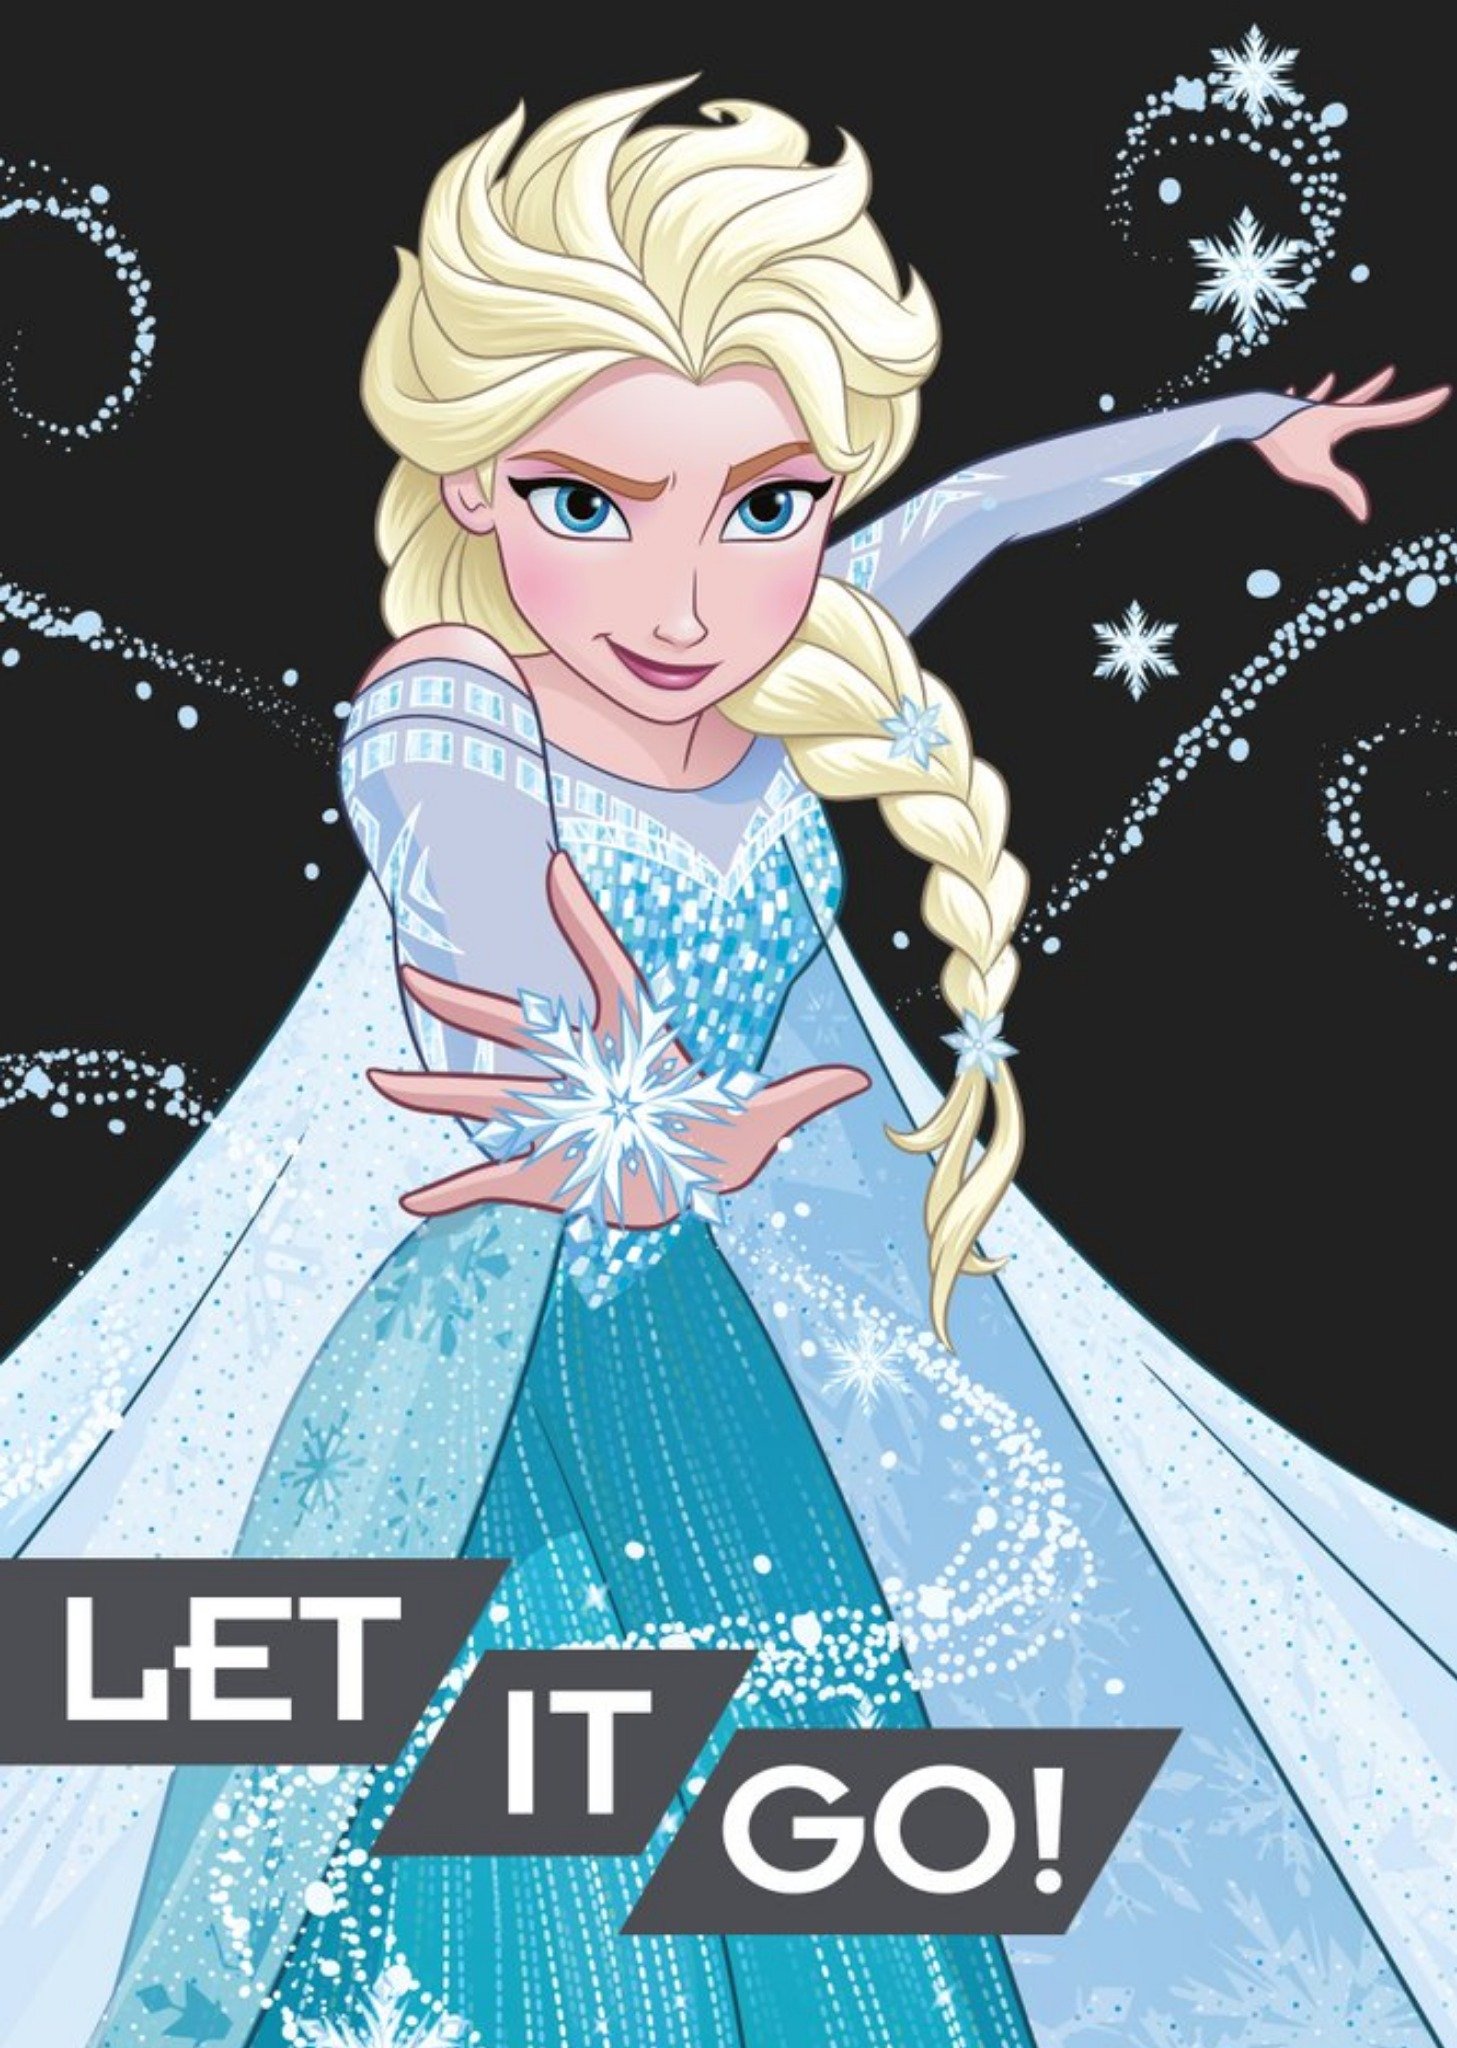 Disney Frozen Princess Elsa Let It Go Card Ecard